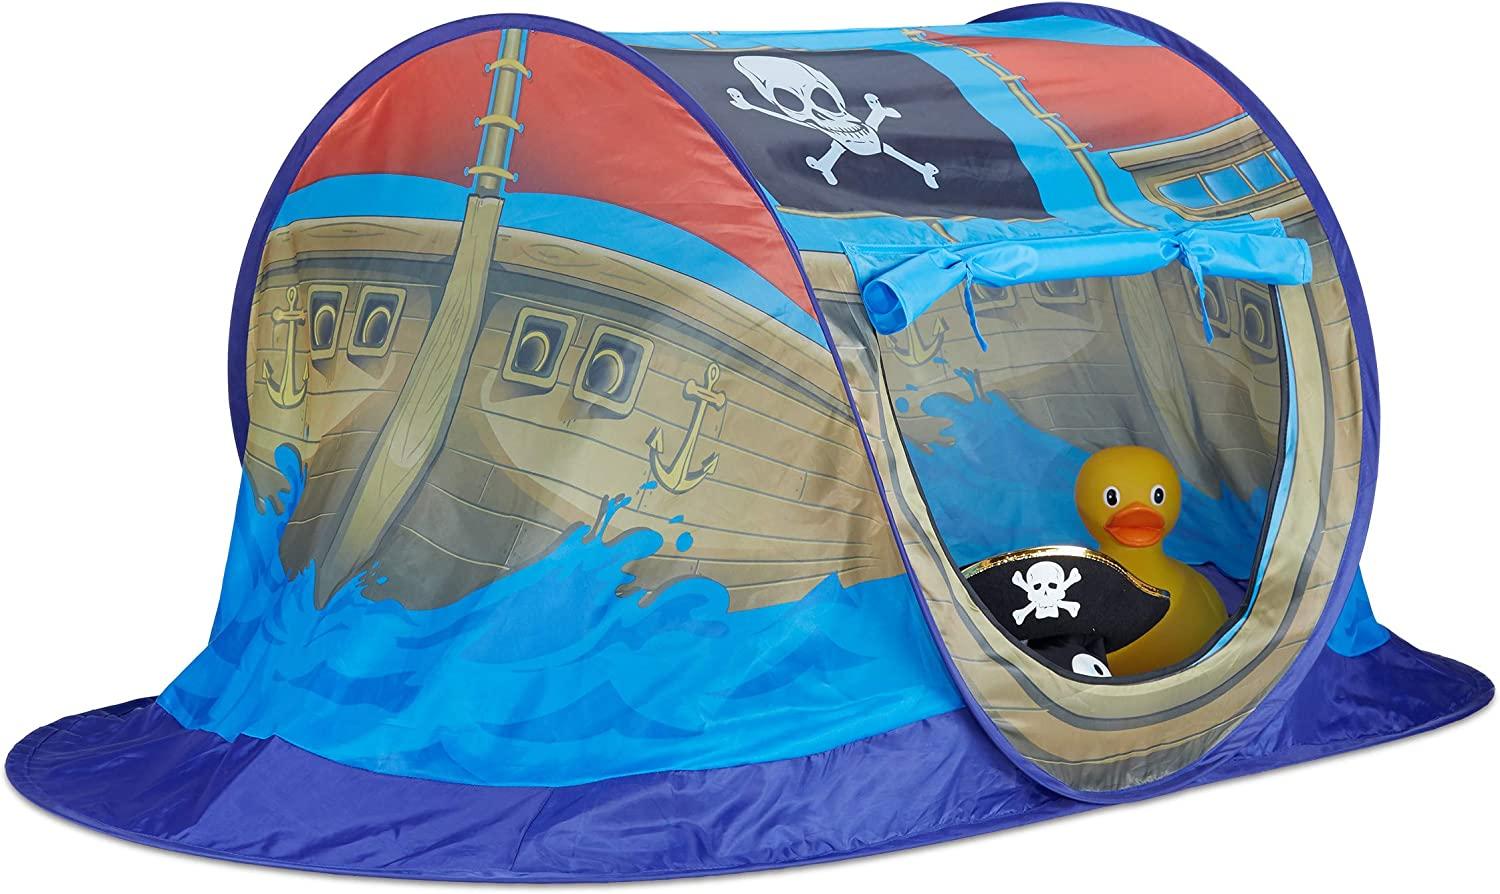 Relaxdays 10022451 Spielzelt Piratenschiff für Jungen, Pop Up Kinderzelt für Innen & Outdoor, Piratenzelt HxBxT 68x170x85cm, blau Bild 1